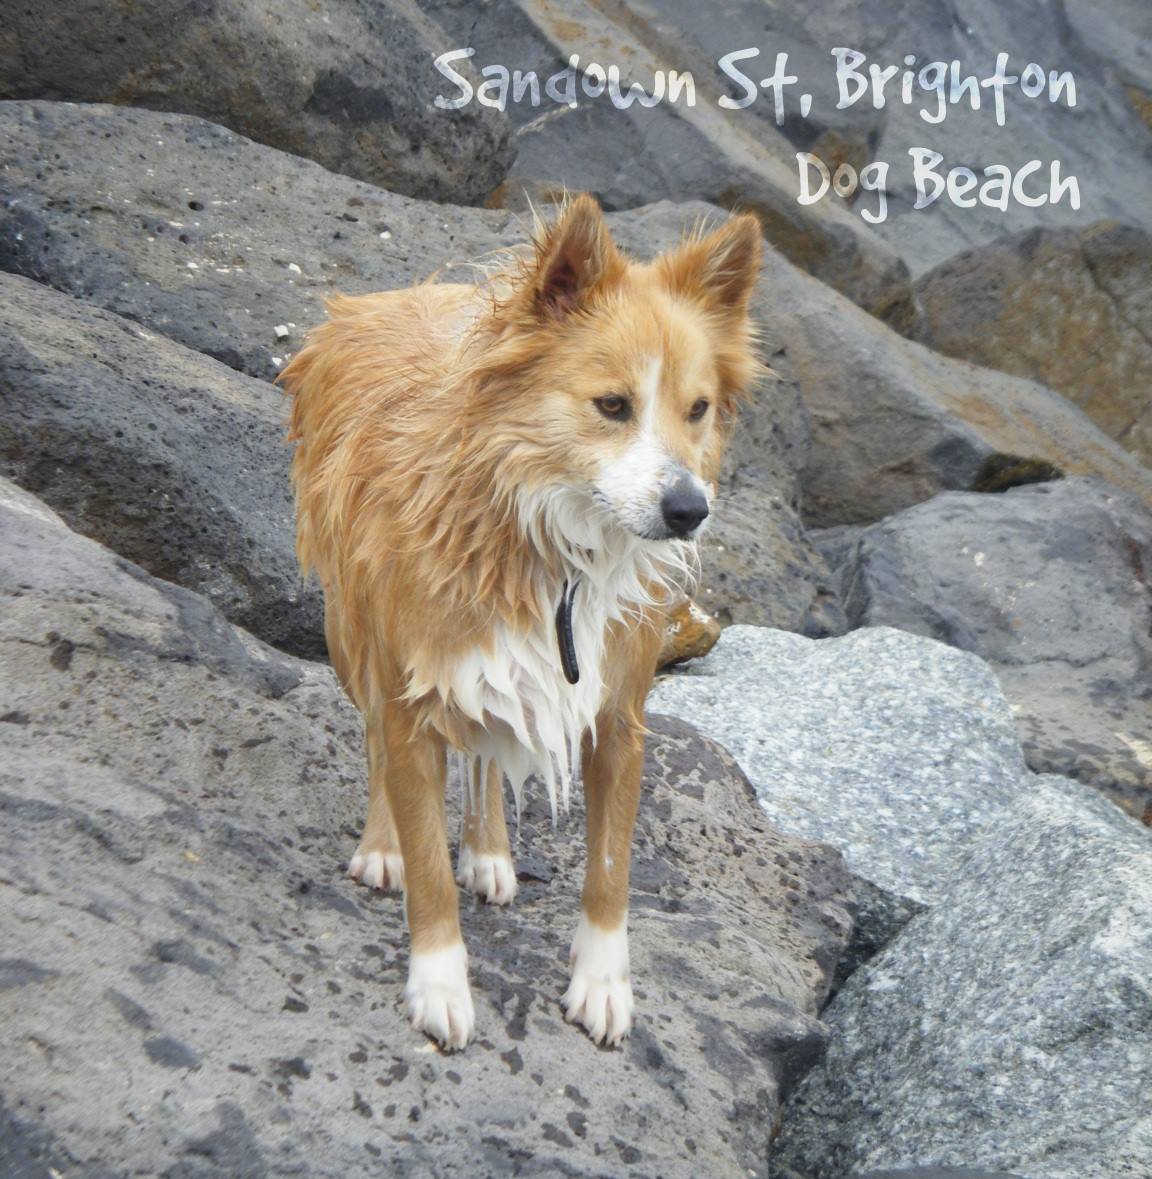 Sandown St Beach, Brighton - Dog Beach